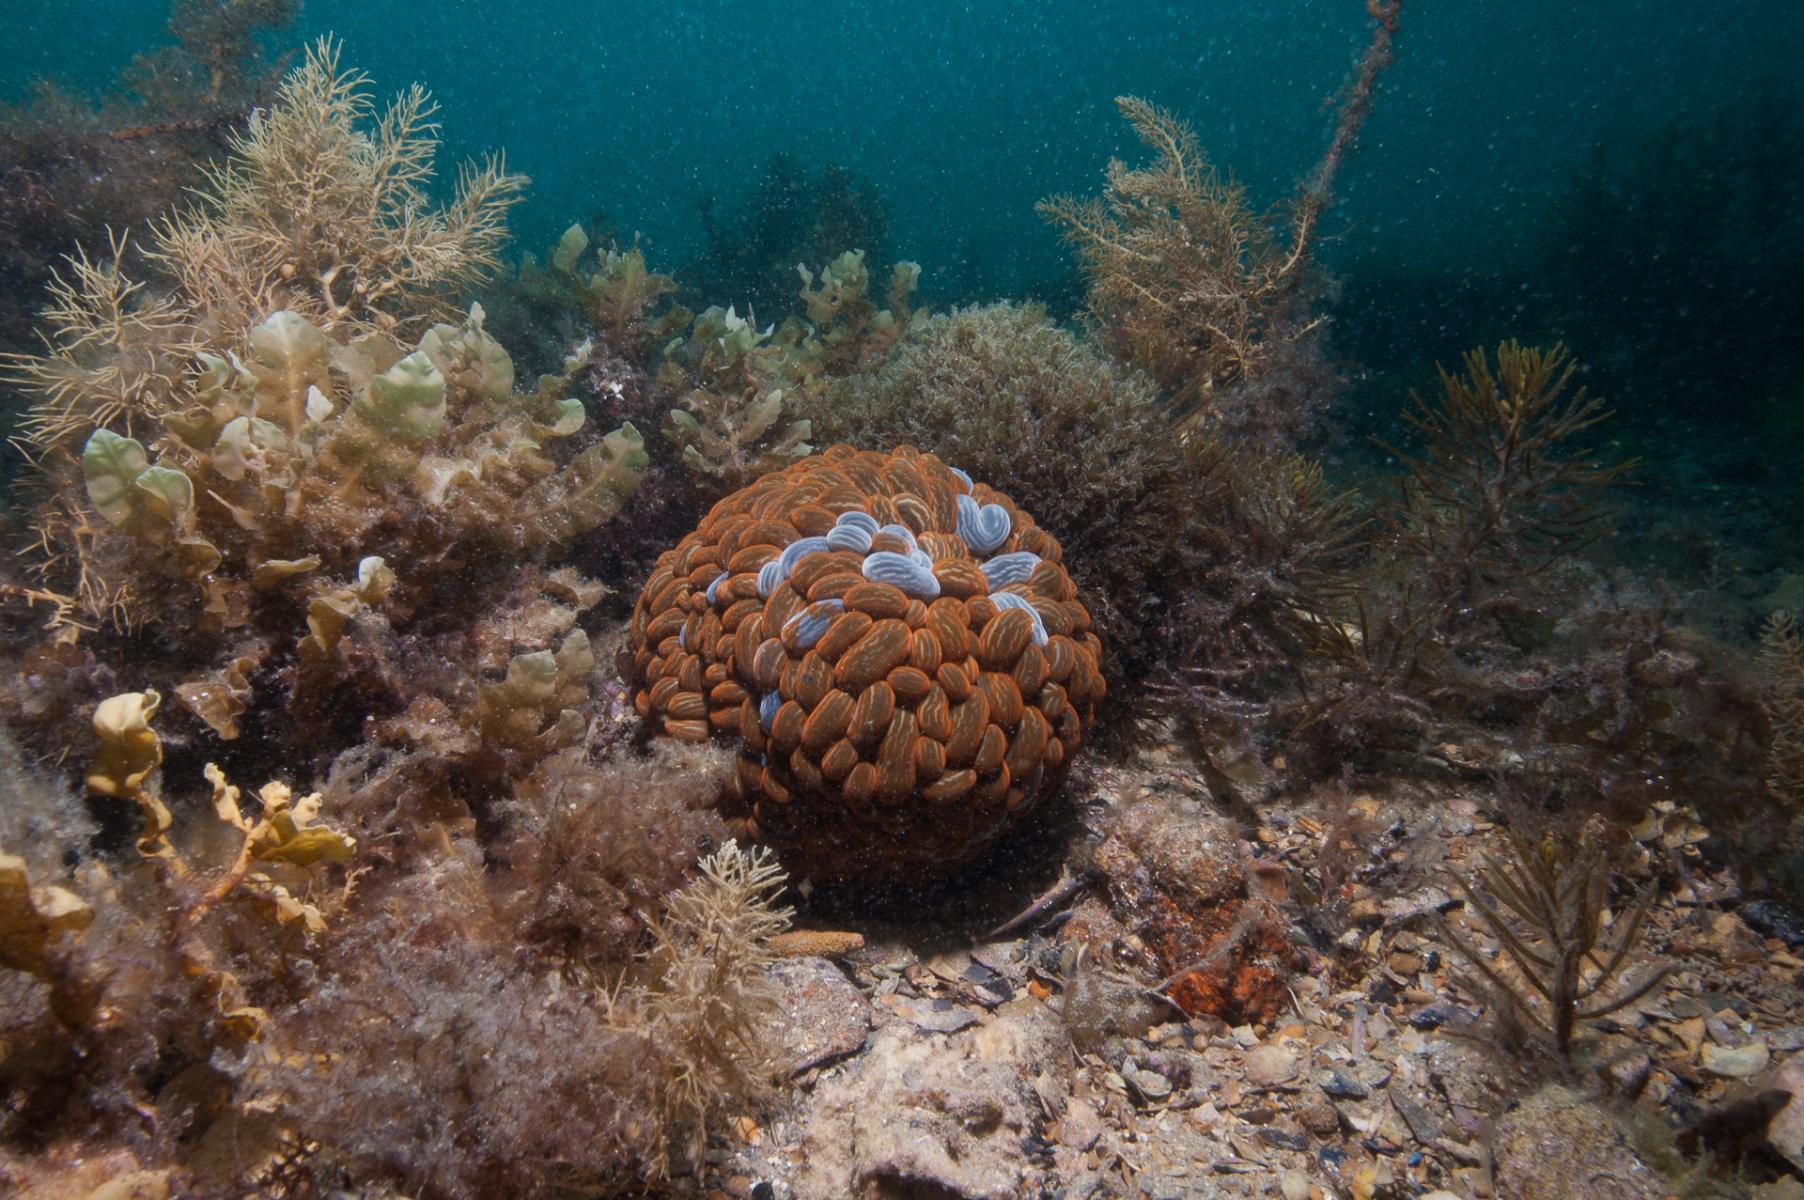 Phlyctenactis tuberculosa: swimming anemone